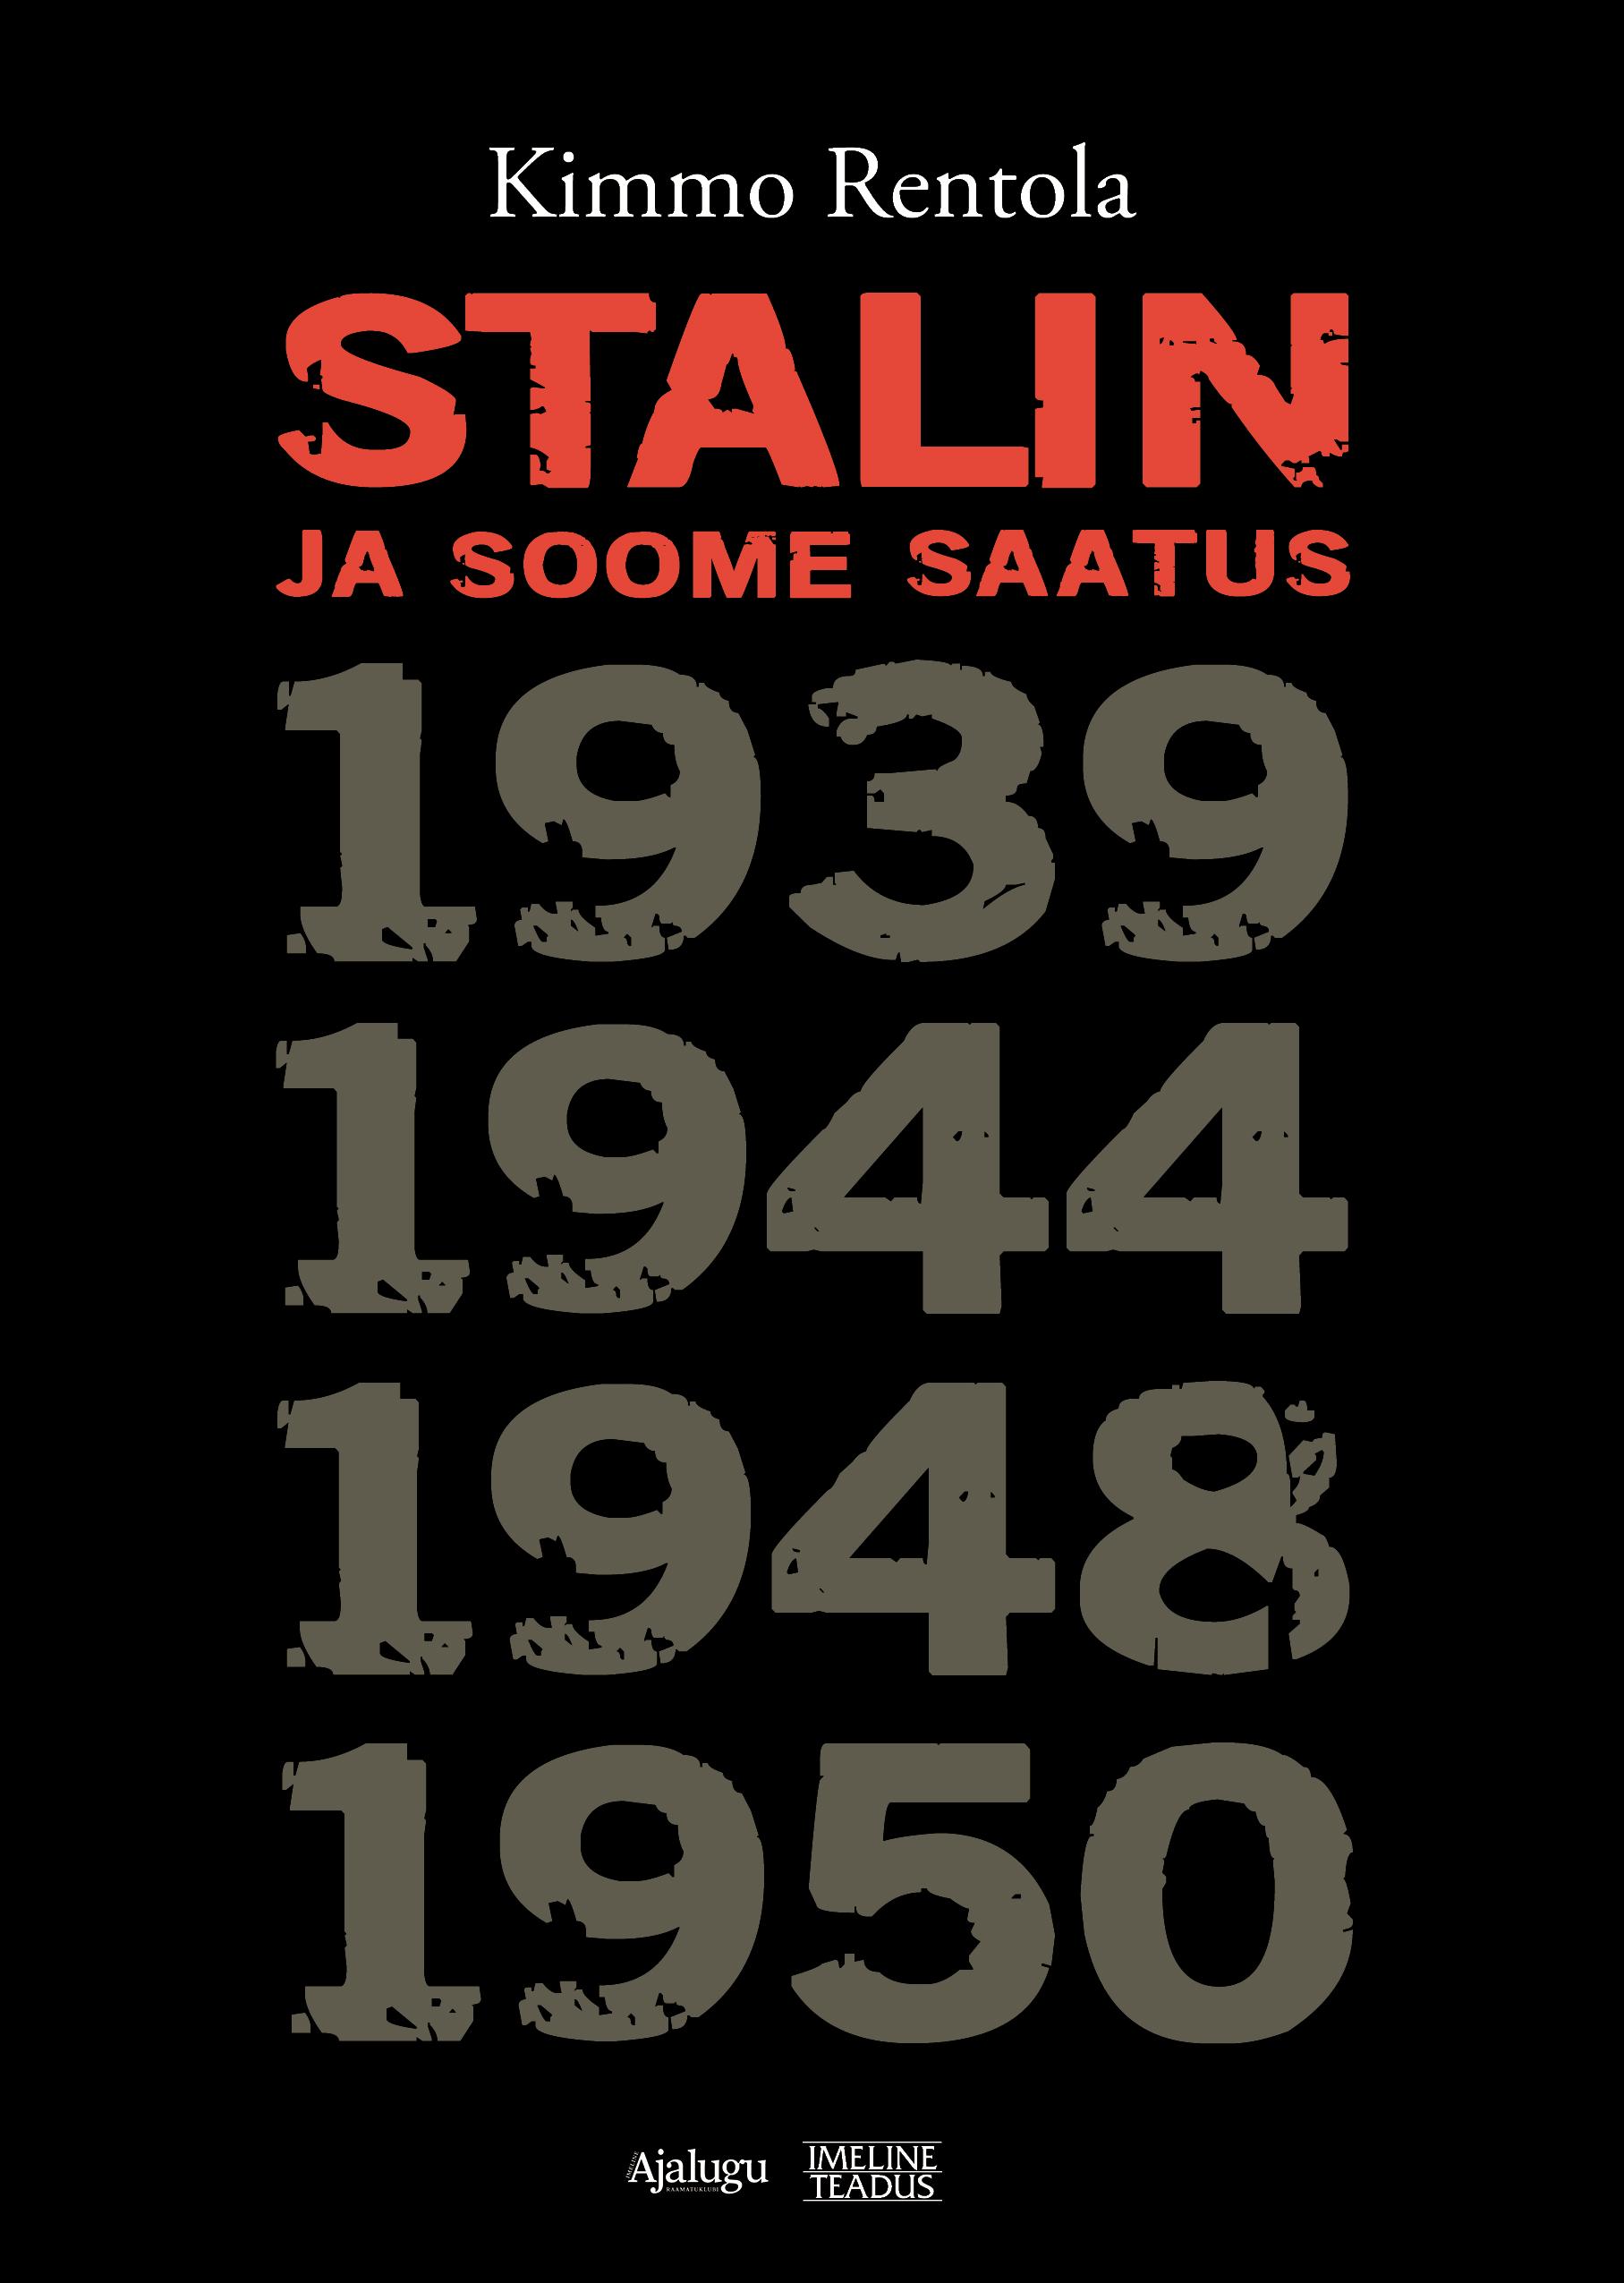 Stalin ja Soome saatus